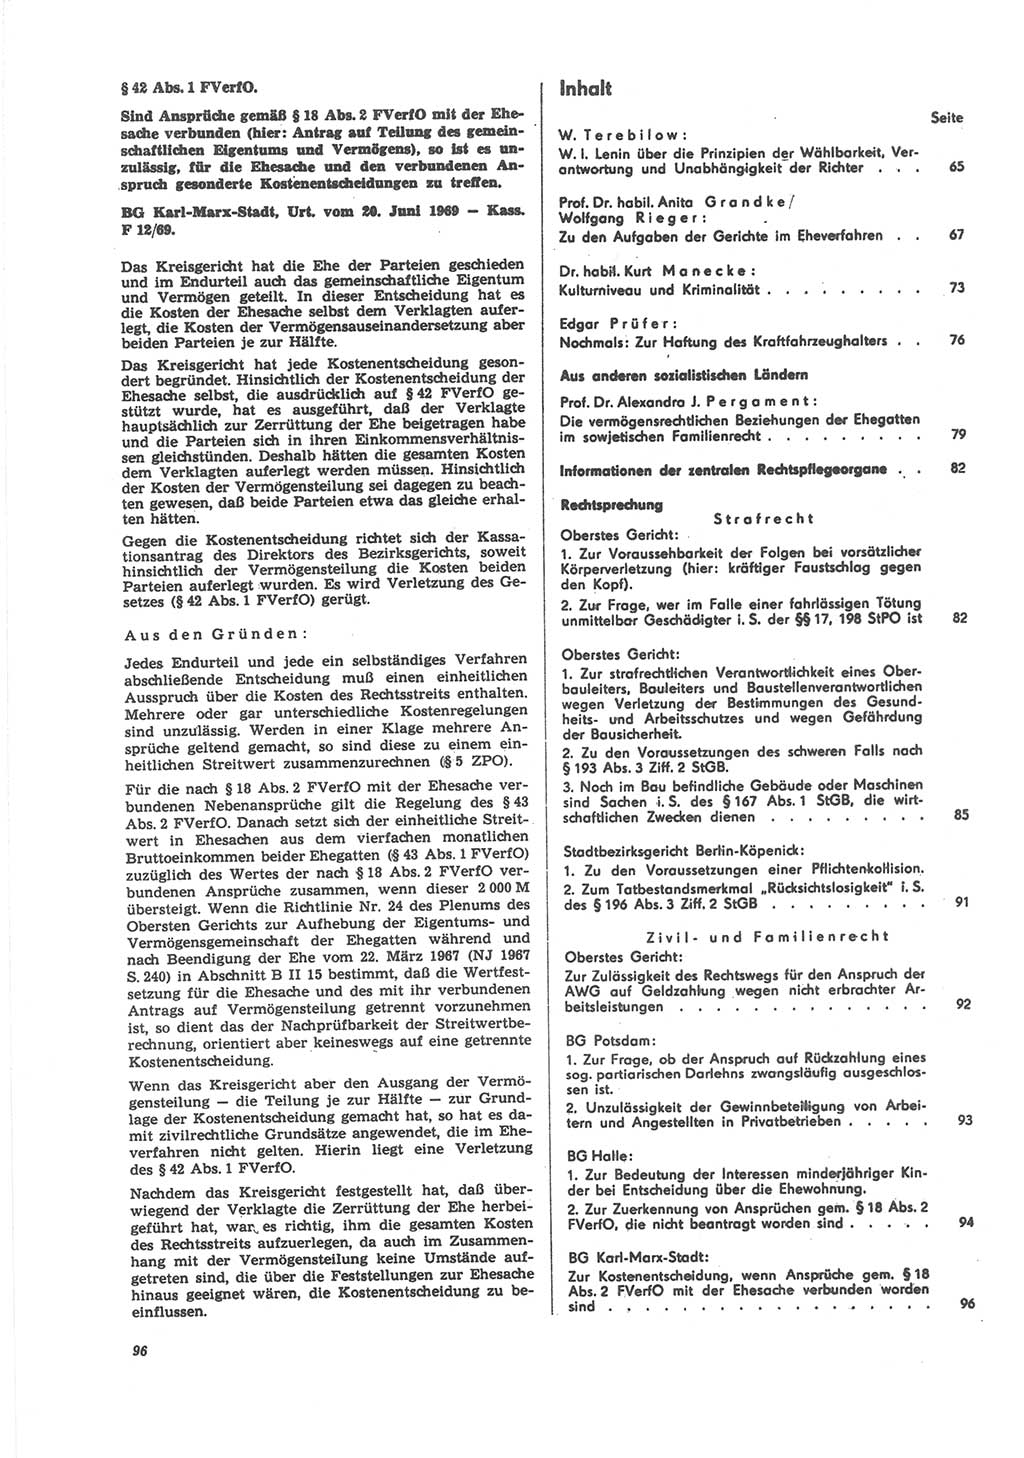 Neue Justiz (NJ), Zeitschrift für Recht und Rechtswissenschaft [Deutsche Demokratische Republik (DDR)], 24. Jahrgang 1970, Seite 96 (NJ DDR 1970, S. 96)